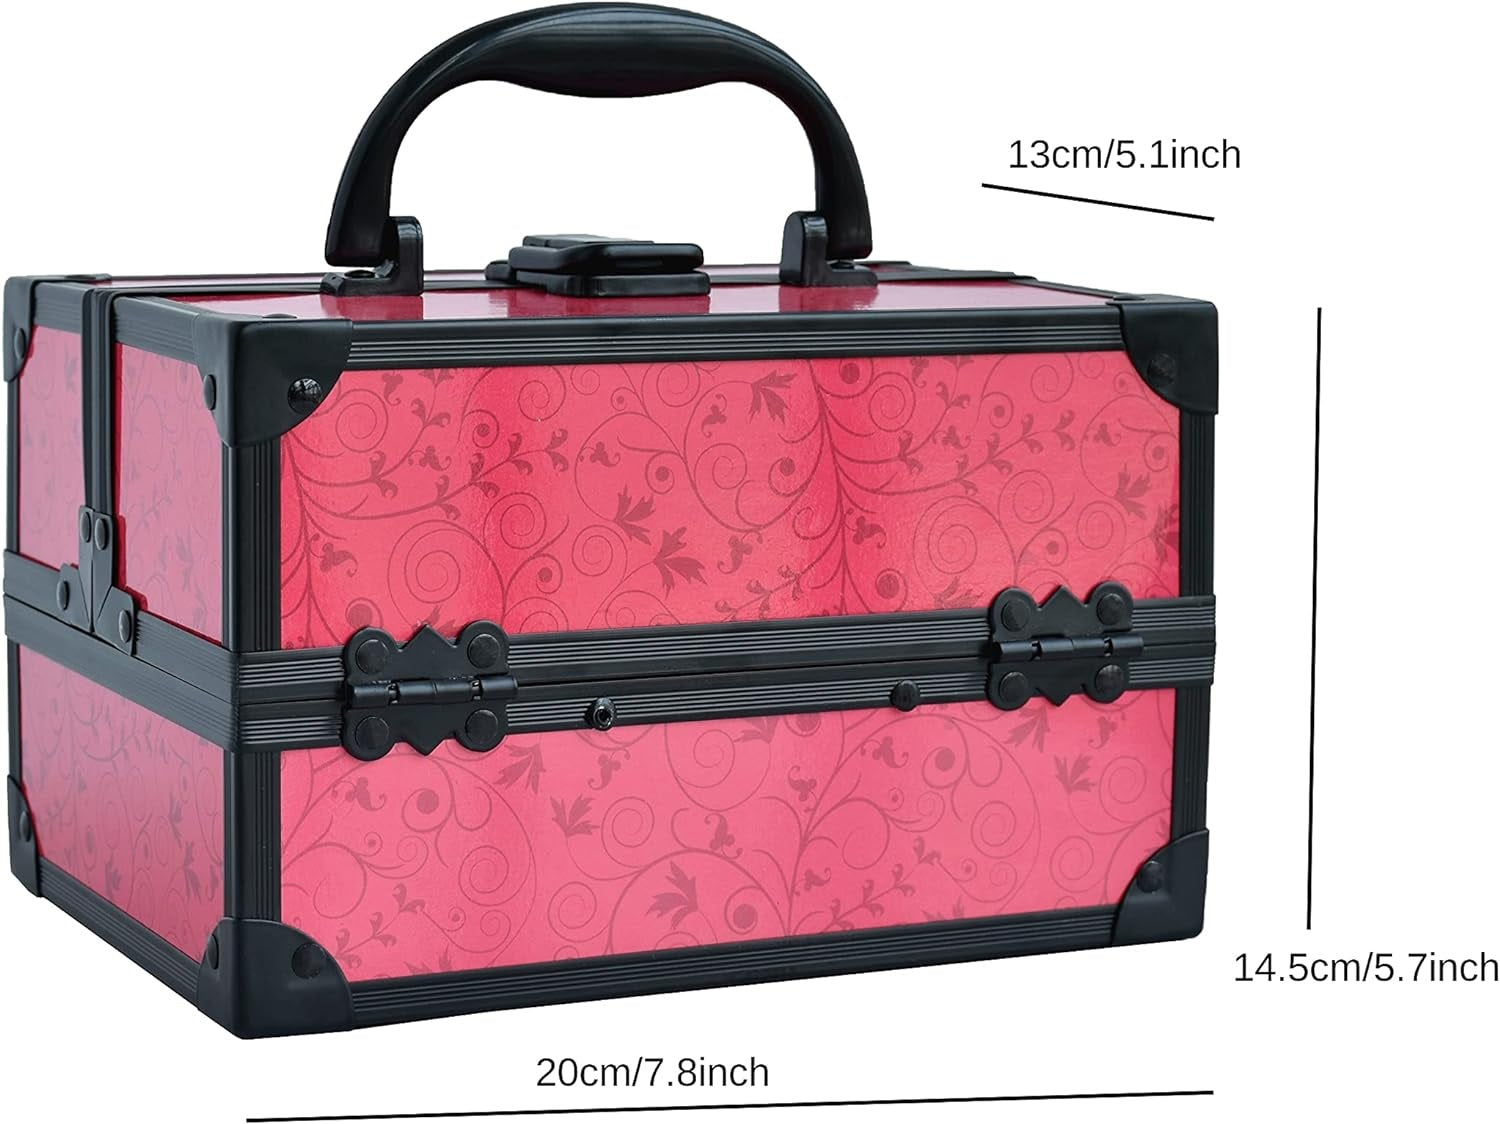 Lil Me Hot Pink Travel Case Make up Kit